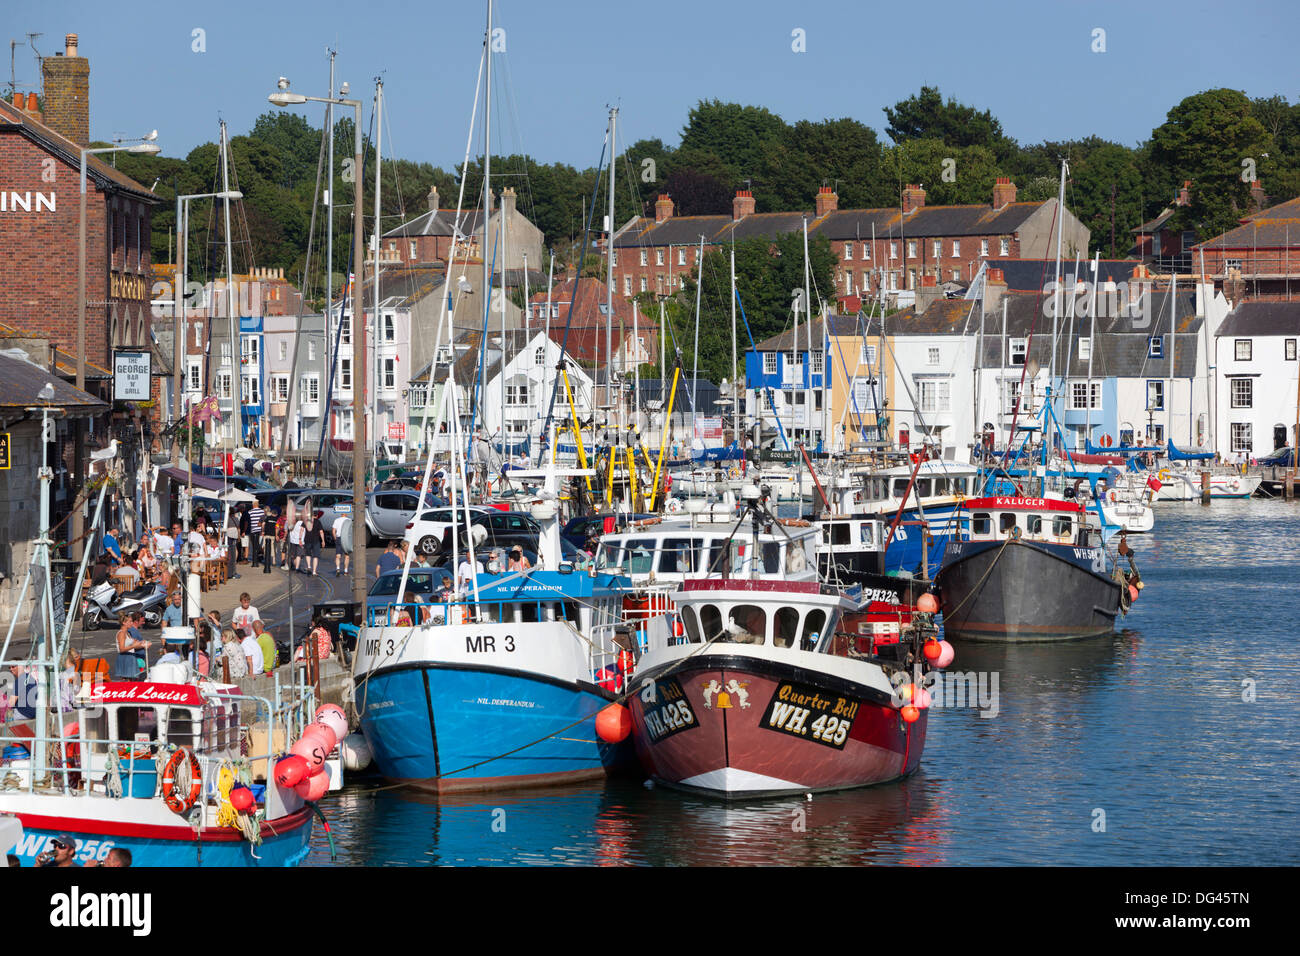 Bateaux de pêche dans le Vieux Port, Weymouth, Dorset, Angleterre, Royaume-Uni, Europe Banque D'Images